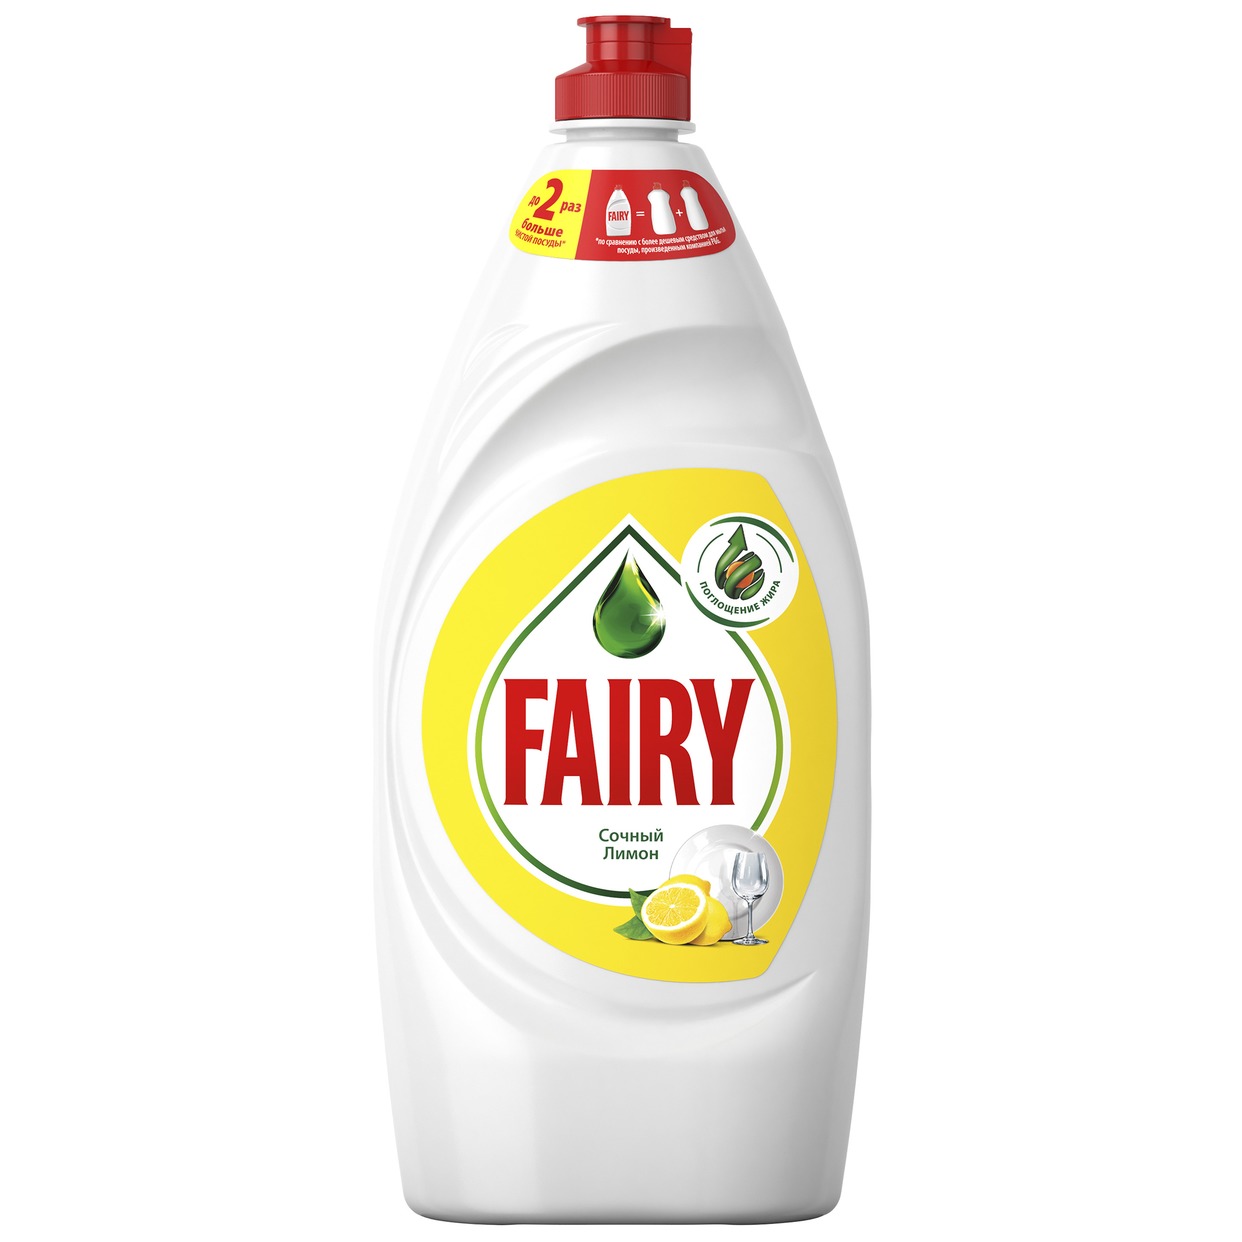 Средство для мытья посуды Fairy Сочный Лимон 900мл по акции в Пятерочке